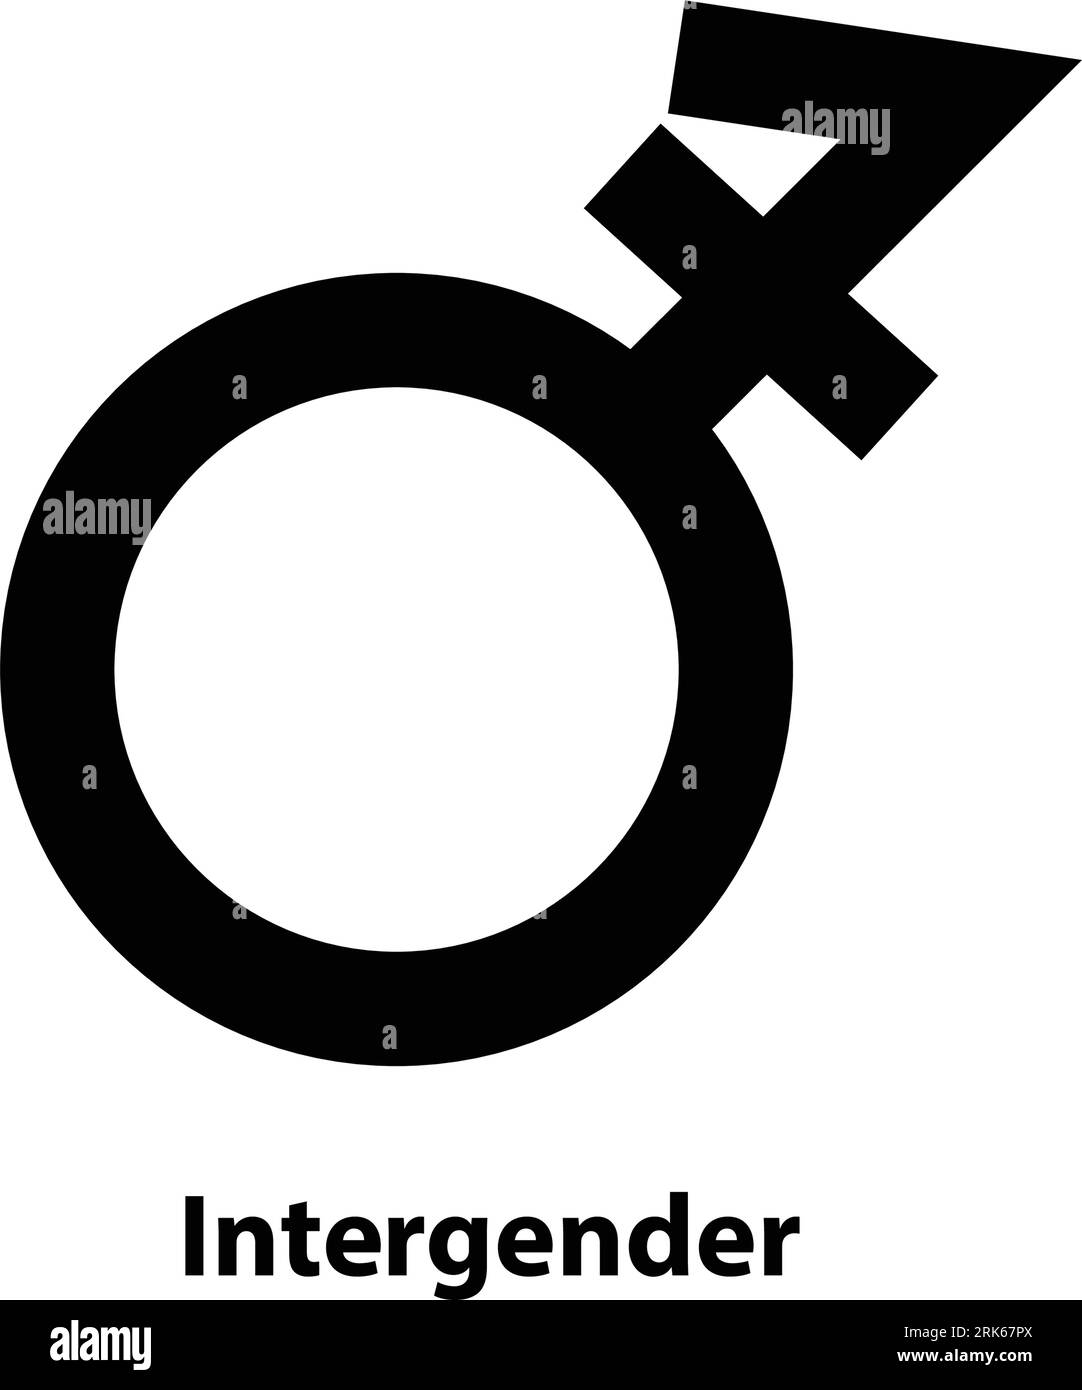 Icona simbolo intergenere. Icona sesso. segno vettoriale isolato su un'illustrazione di sfondo bianco per grafica e web design. Illustrazione Vettoriale